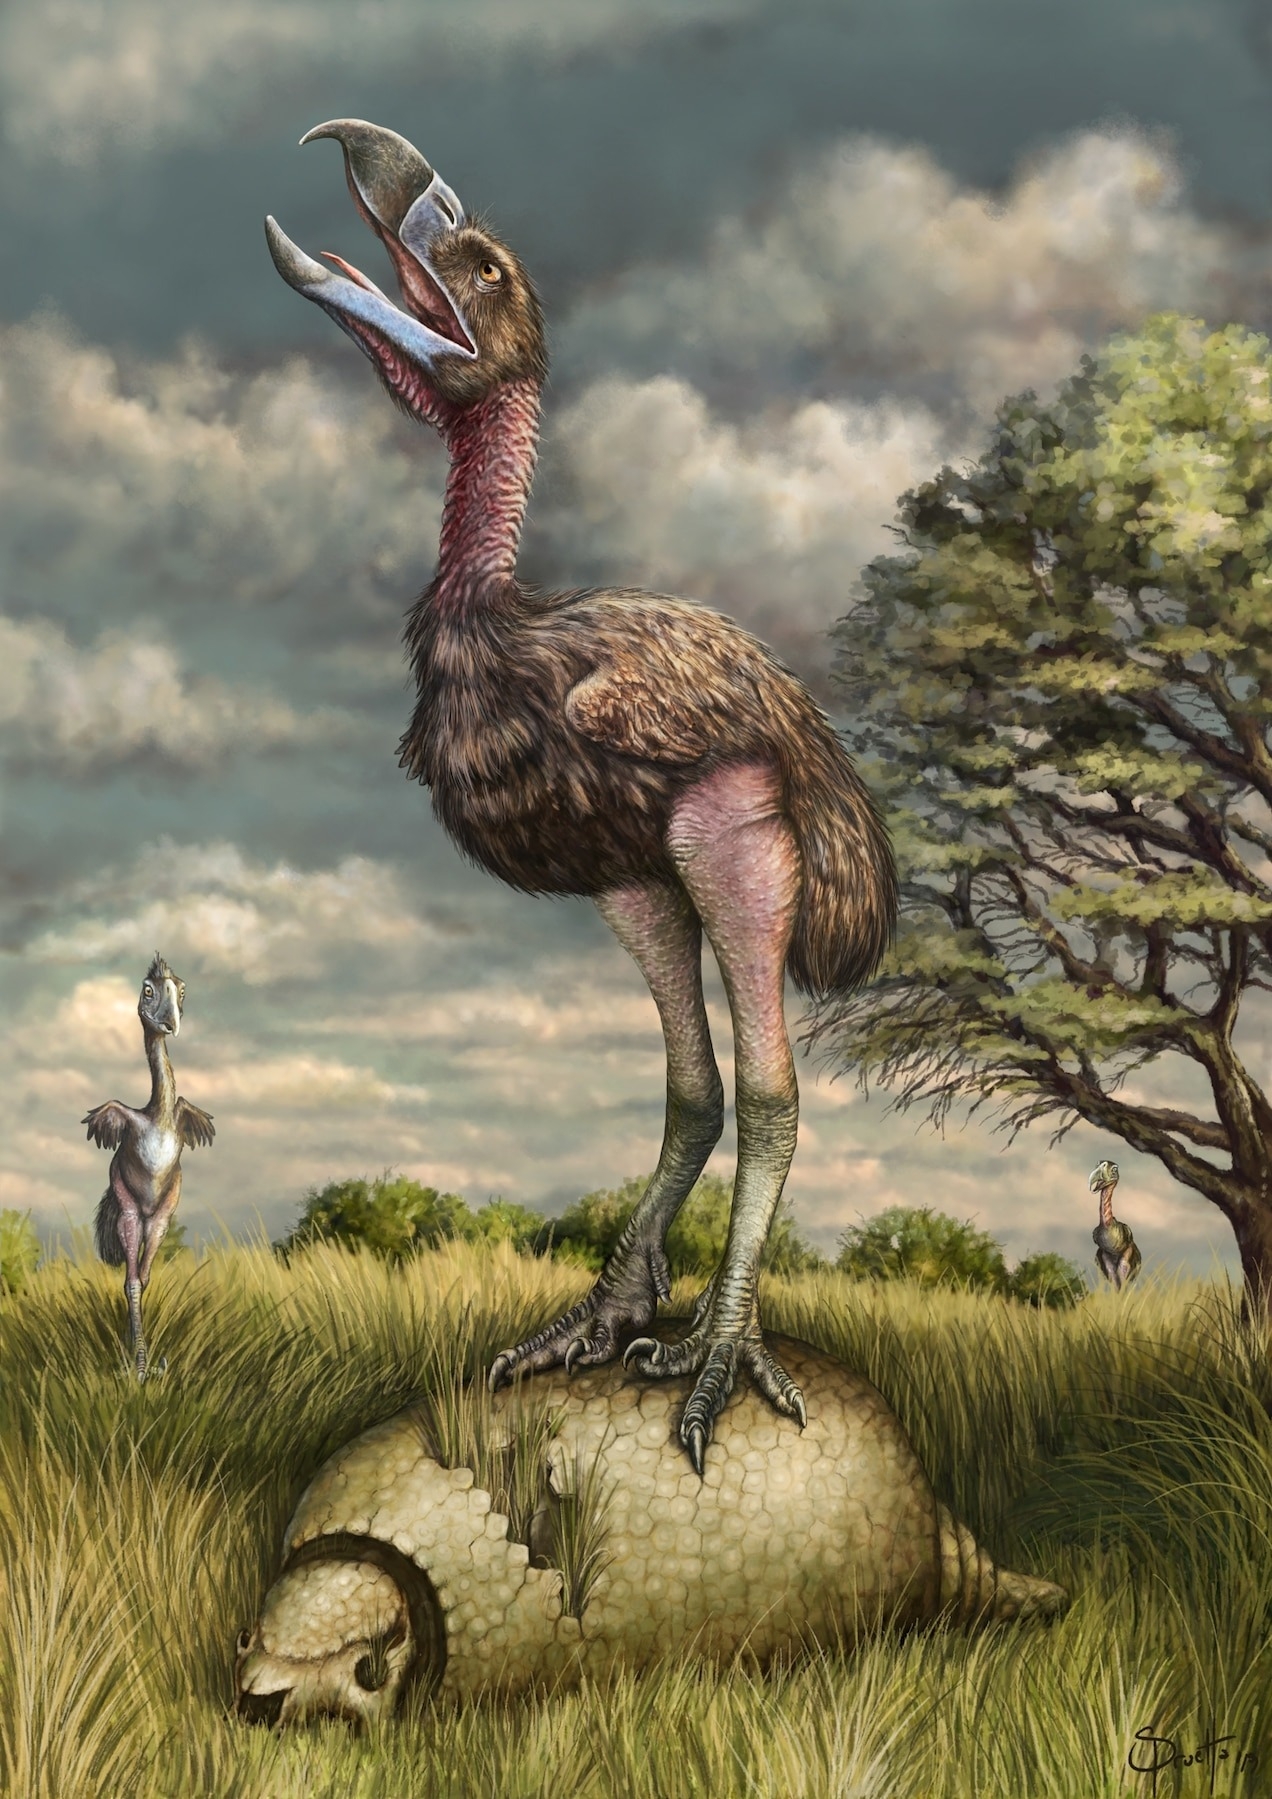 長頸曲帶恐鶴（Phorusrhacos longissimus）的想像圖，這是一種在數百萬年前佔據了南美洲的恐鶴。ILLUSTRATION BY H. SANTIAGO DRUETTA